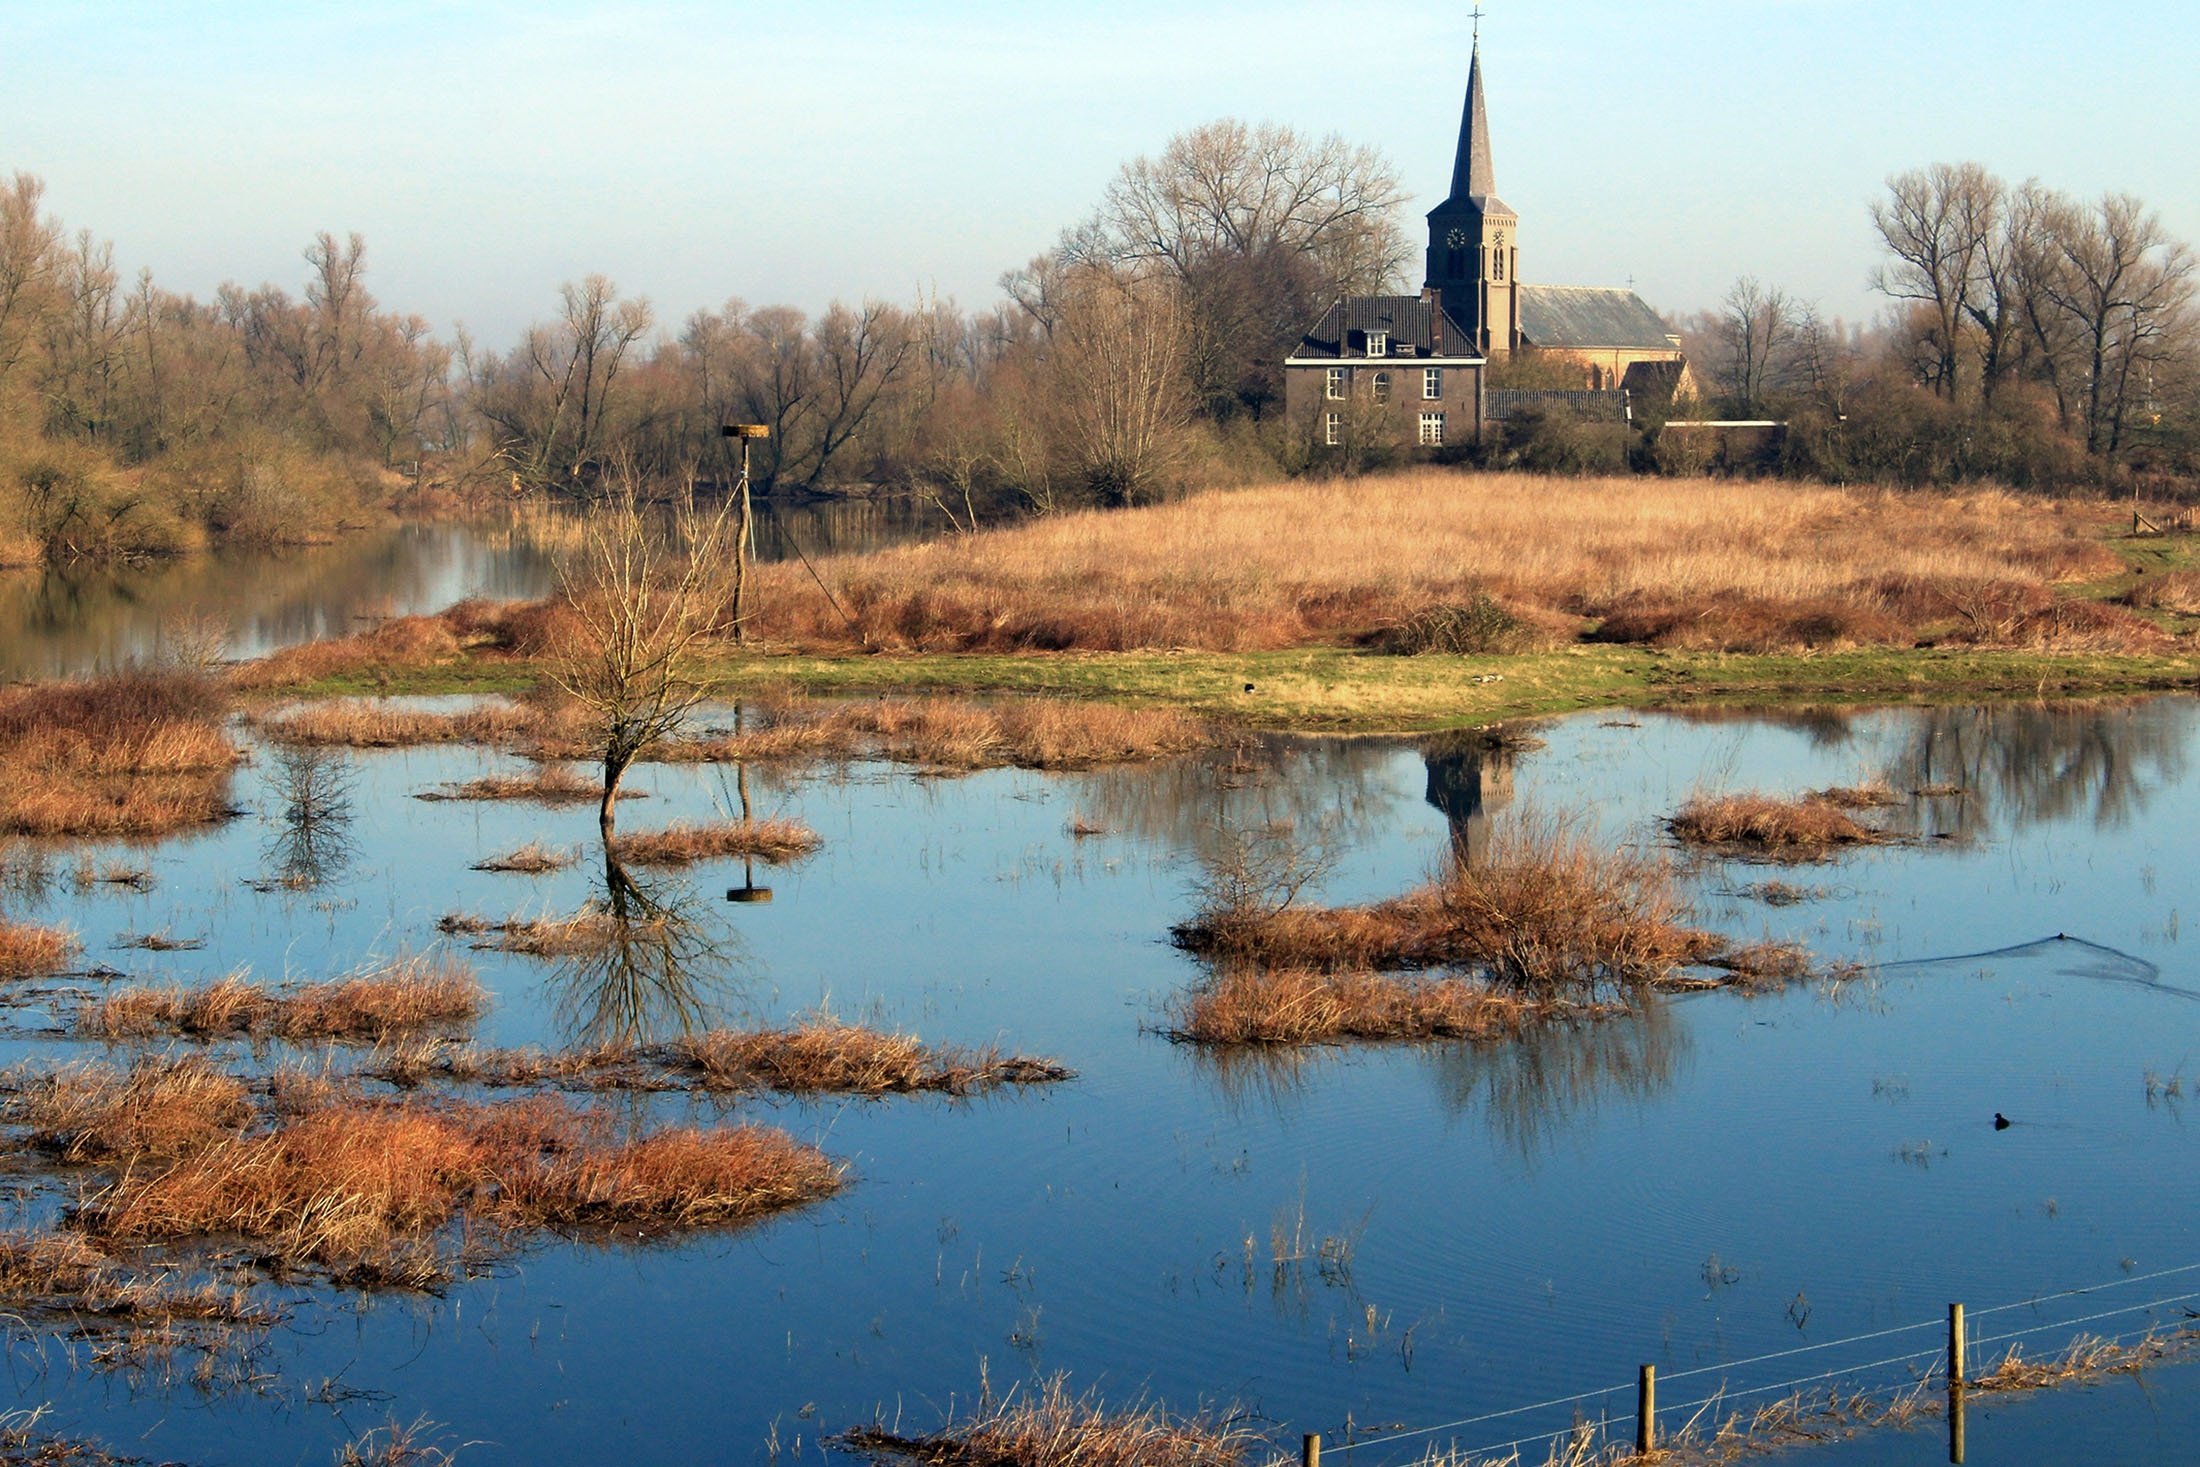 Millingerwaard dicirikan oleh lanskap dataran banjir yang kasar.  (foto dpa)